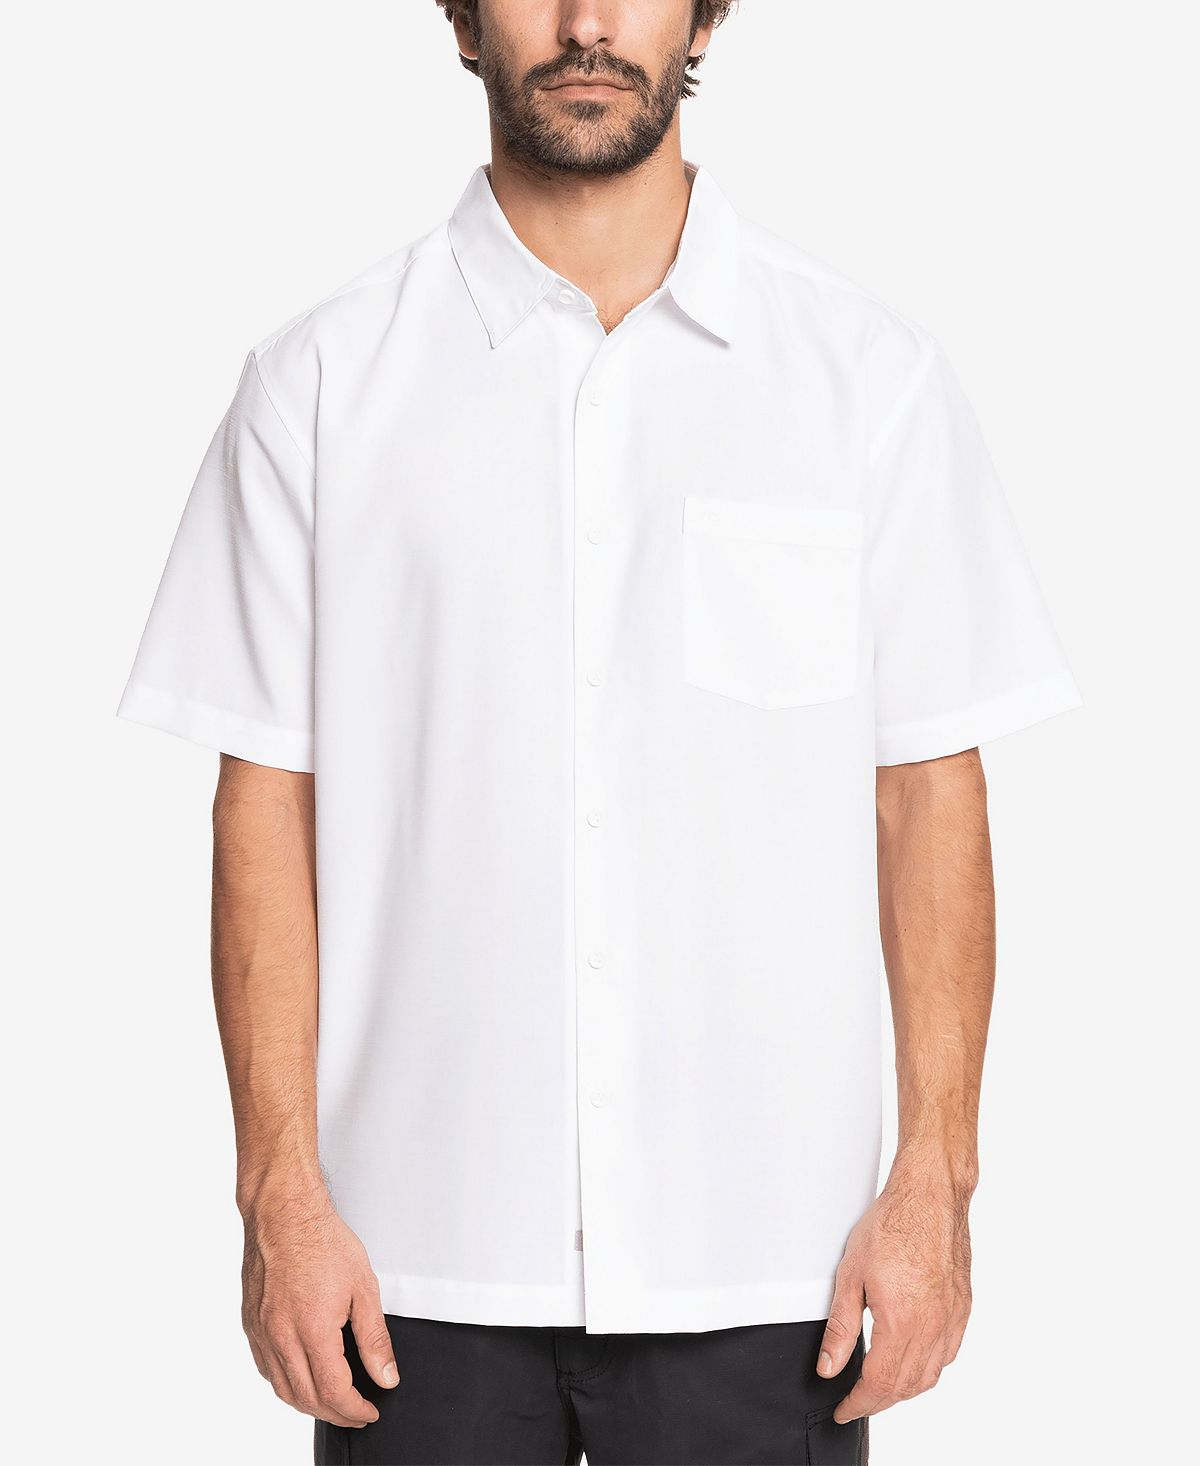 Мужская рубашка Centinela Quiksilver Quiksilver Waterman цена и фото